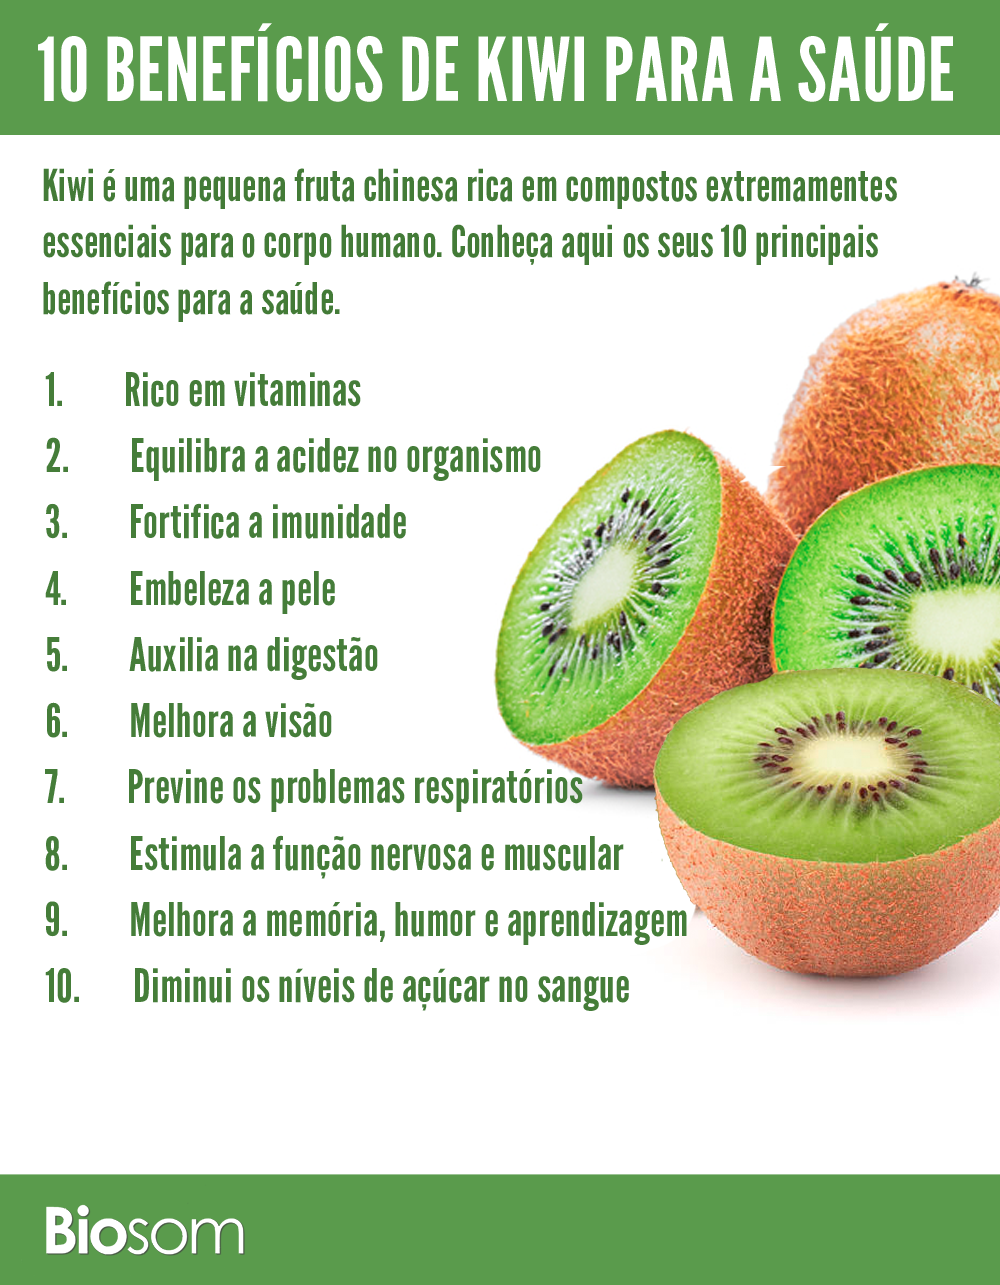  Pelajari tentang varietas kiwi kuning dan semua manfaat buah ini